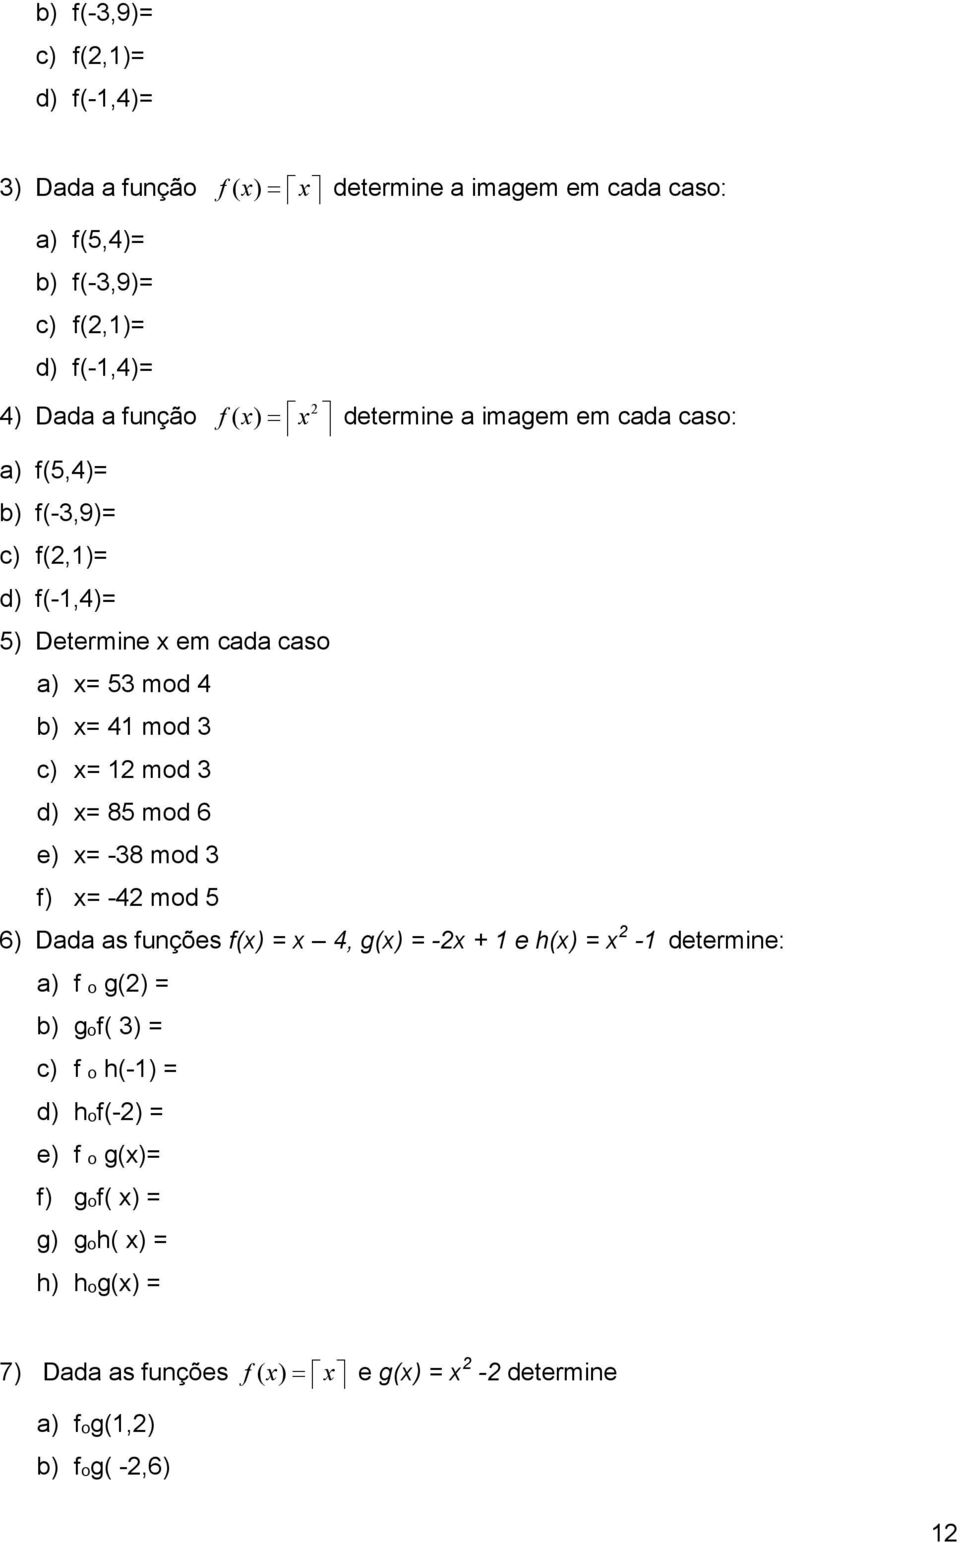 x= mod d) x= 8 mod 6 e) x= -8 mod f) x= - mod 6) Dada as funções f(x) = x, g(x) = -x + e h(x) = x - determine: a) f ₒ g() = b) gₒf( ) = c) f